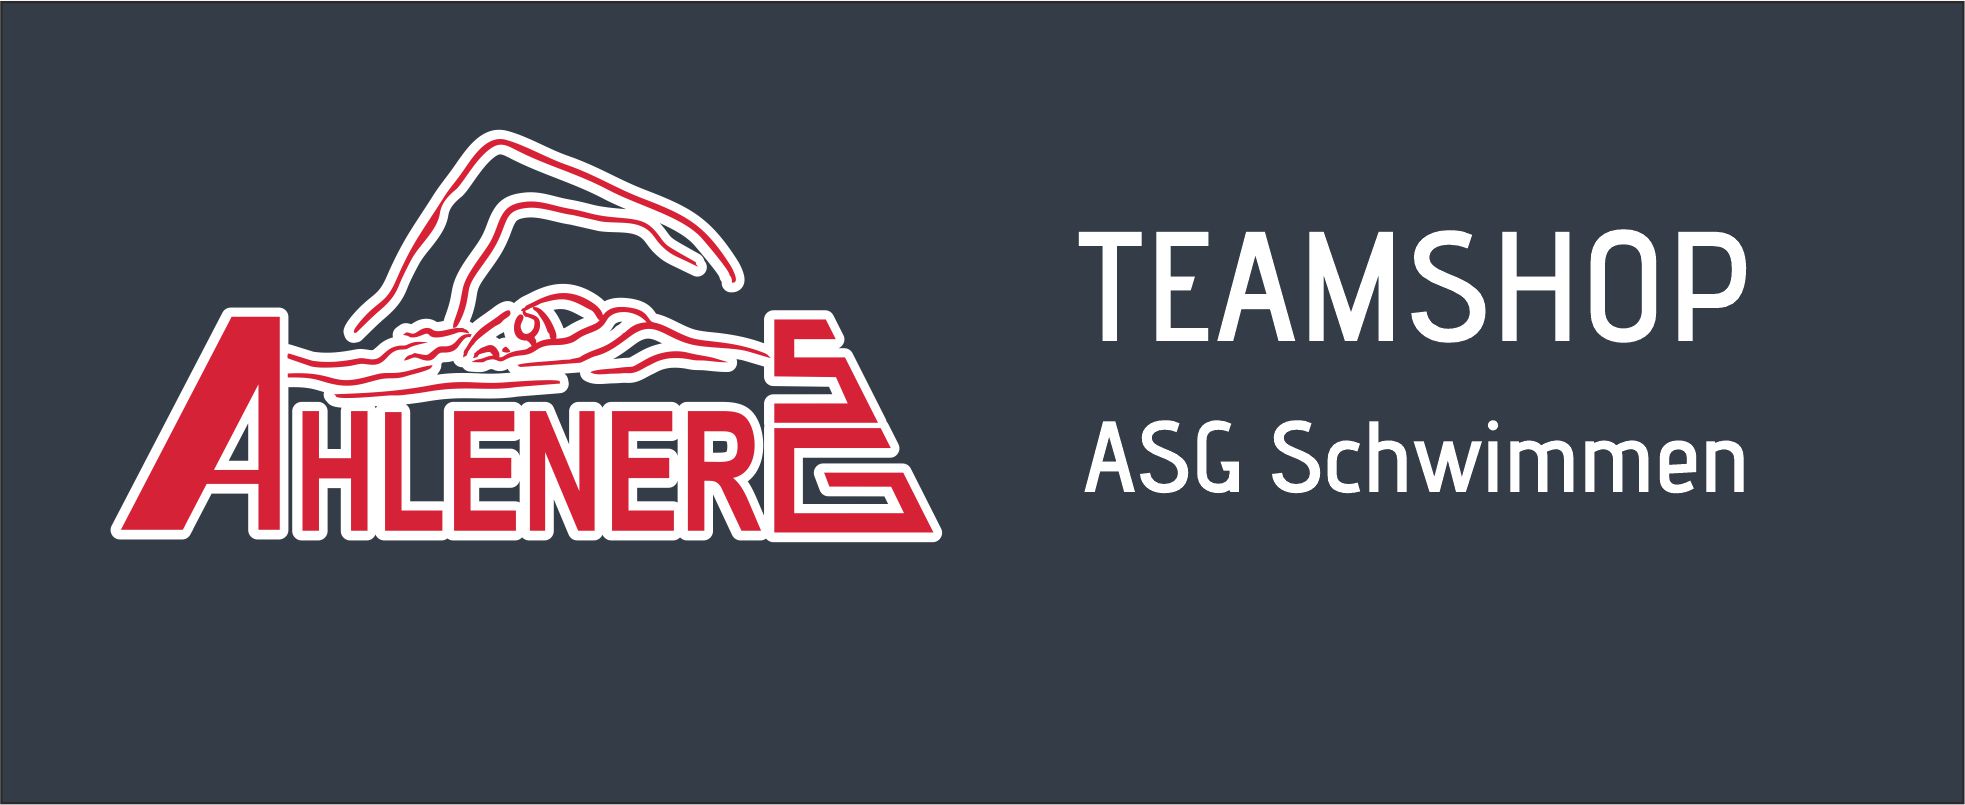 ASG Schwimmen Logo